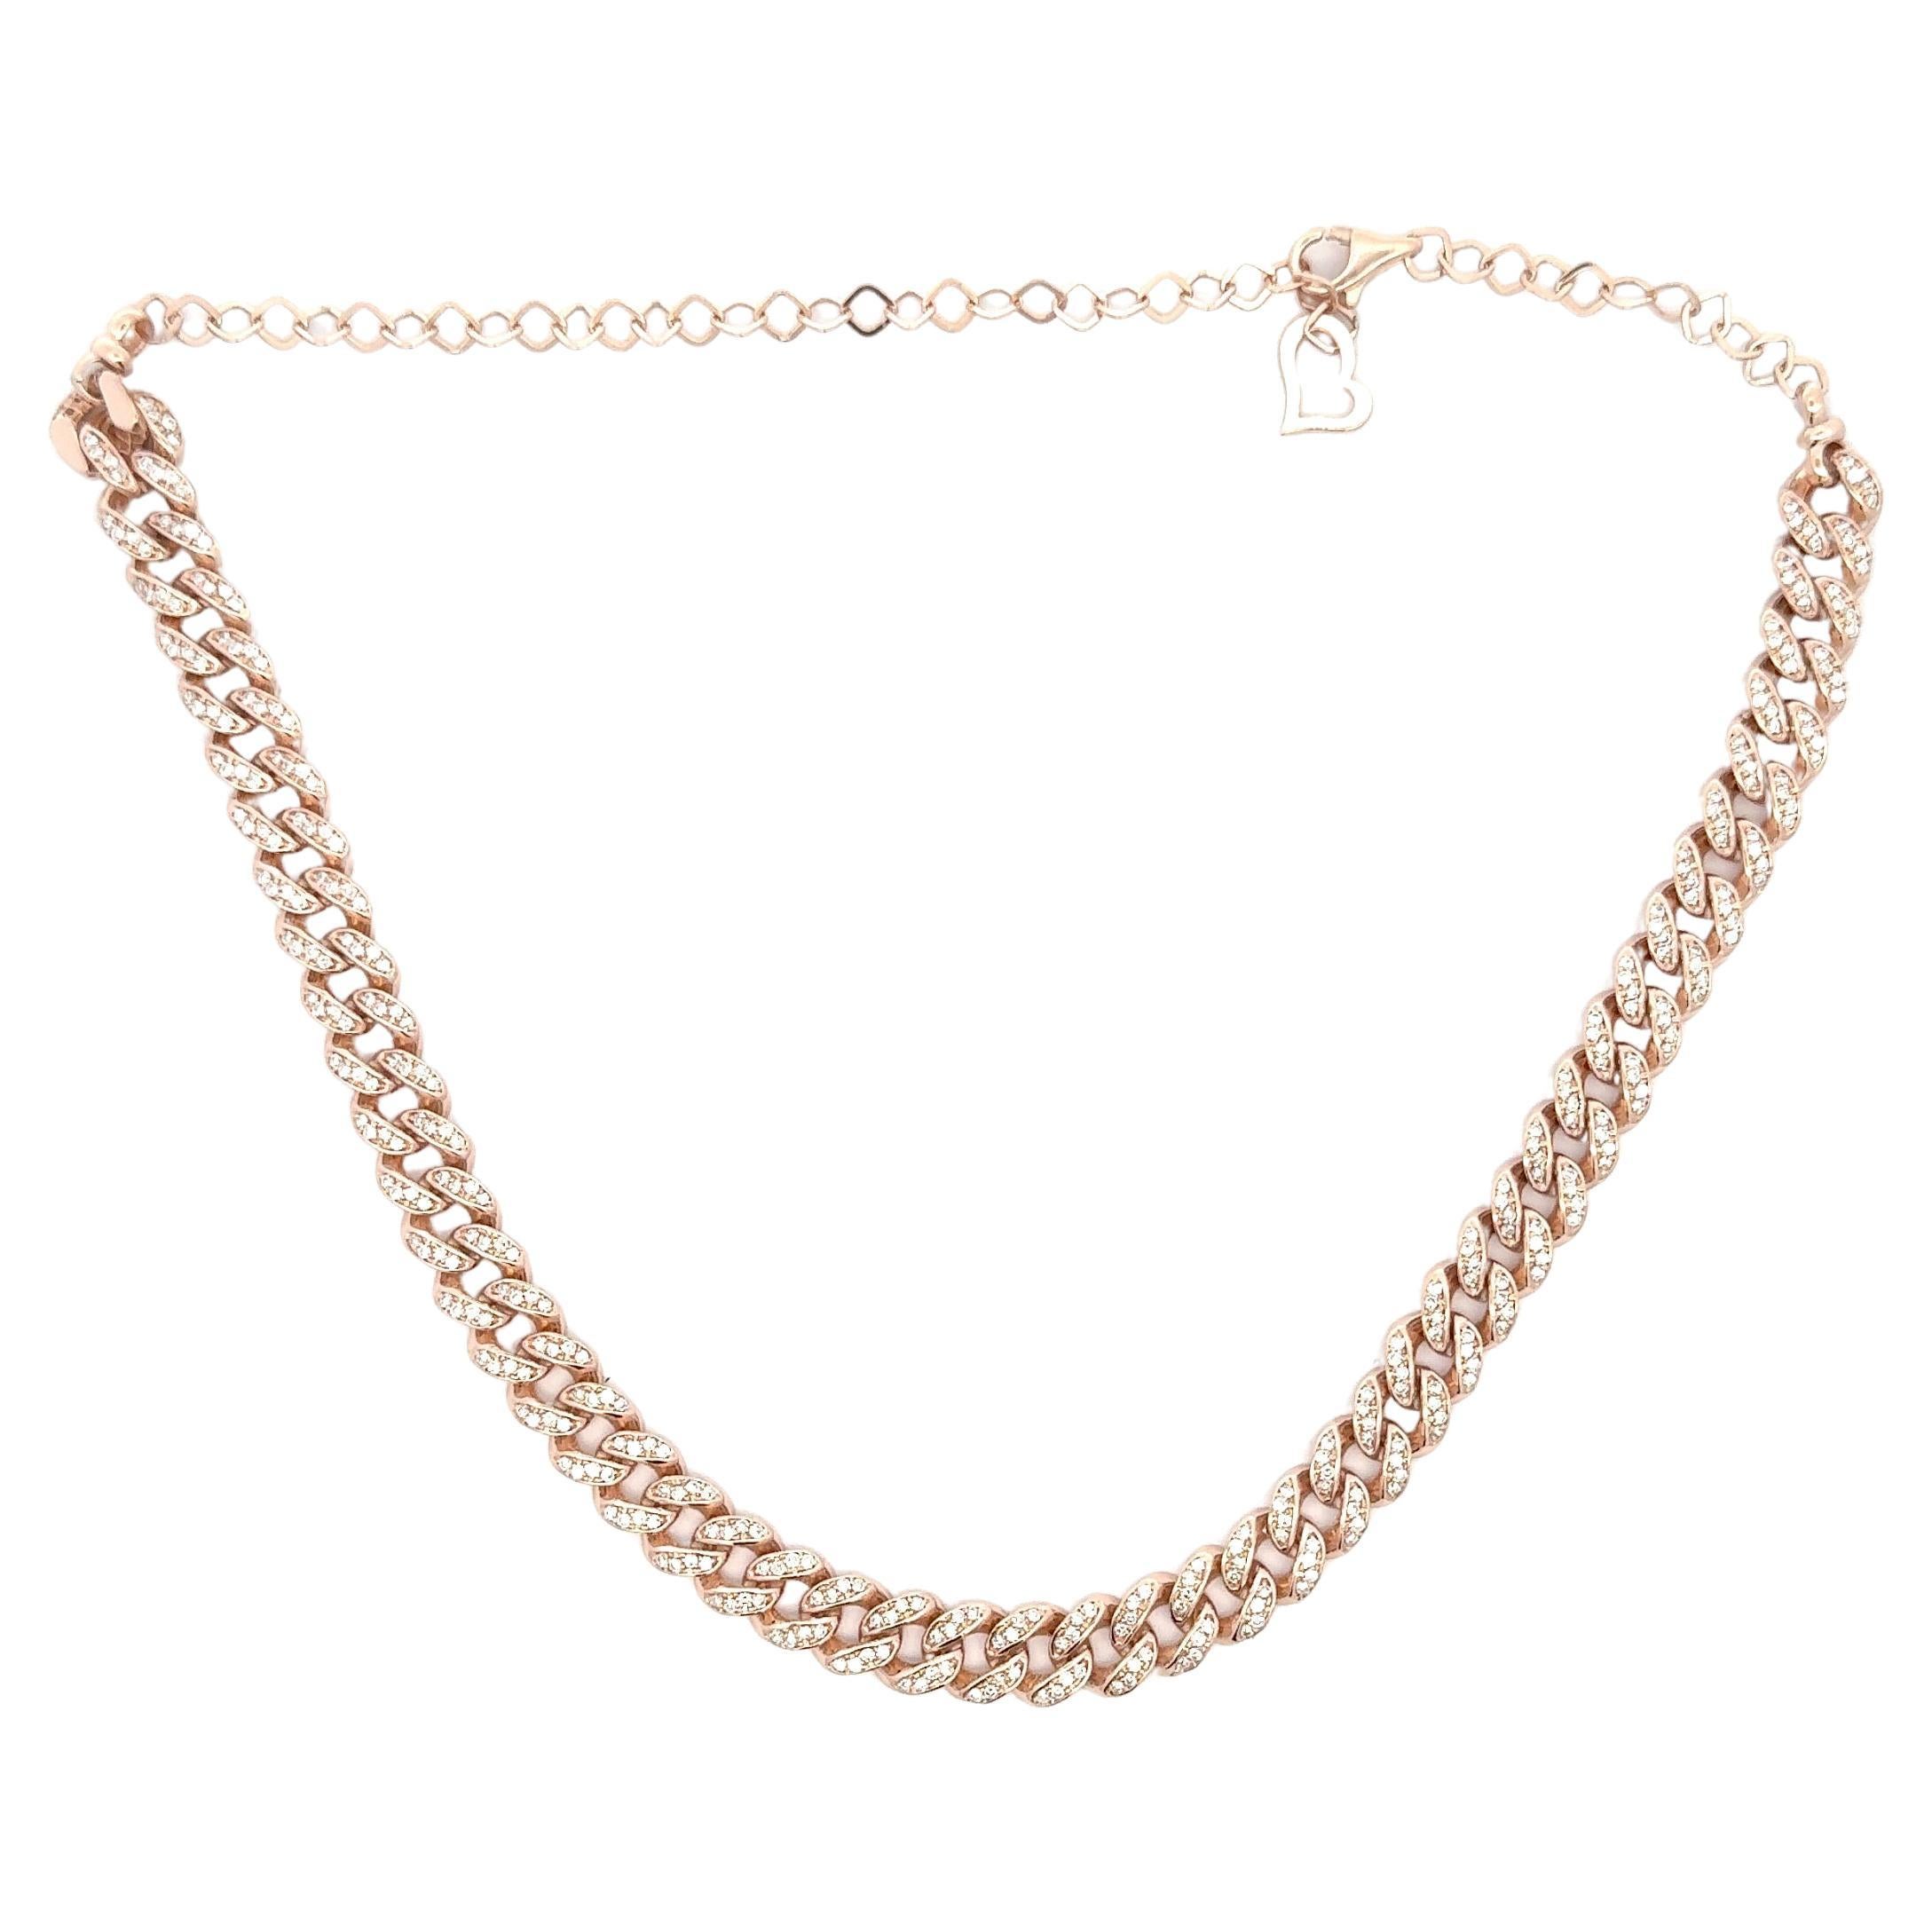 Diamond Cuban Link Choker Necklace Adjustable 1.88 Carats 14 Karat Rose Gold